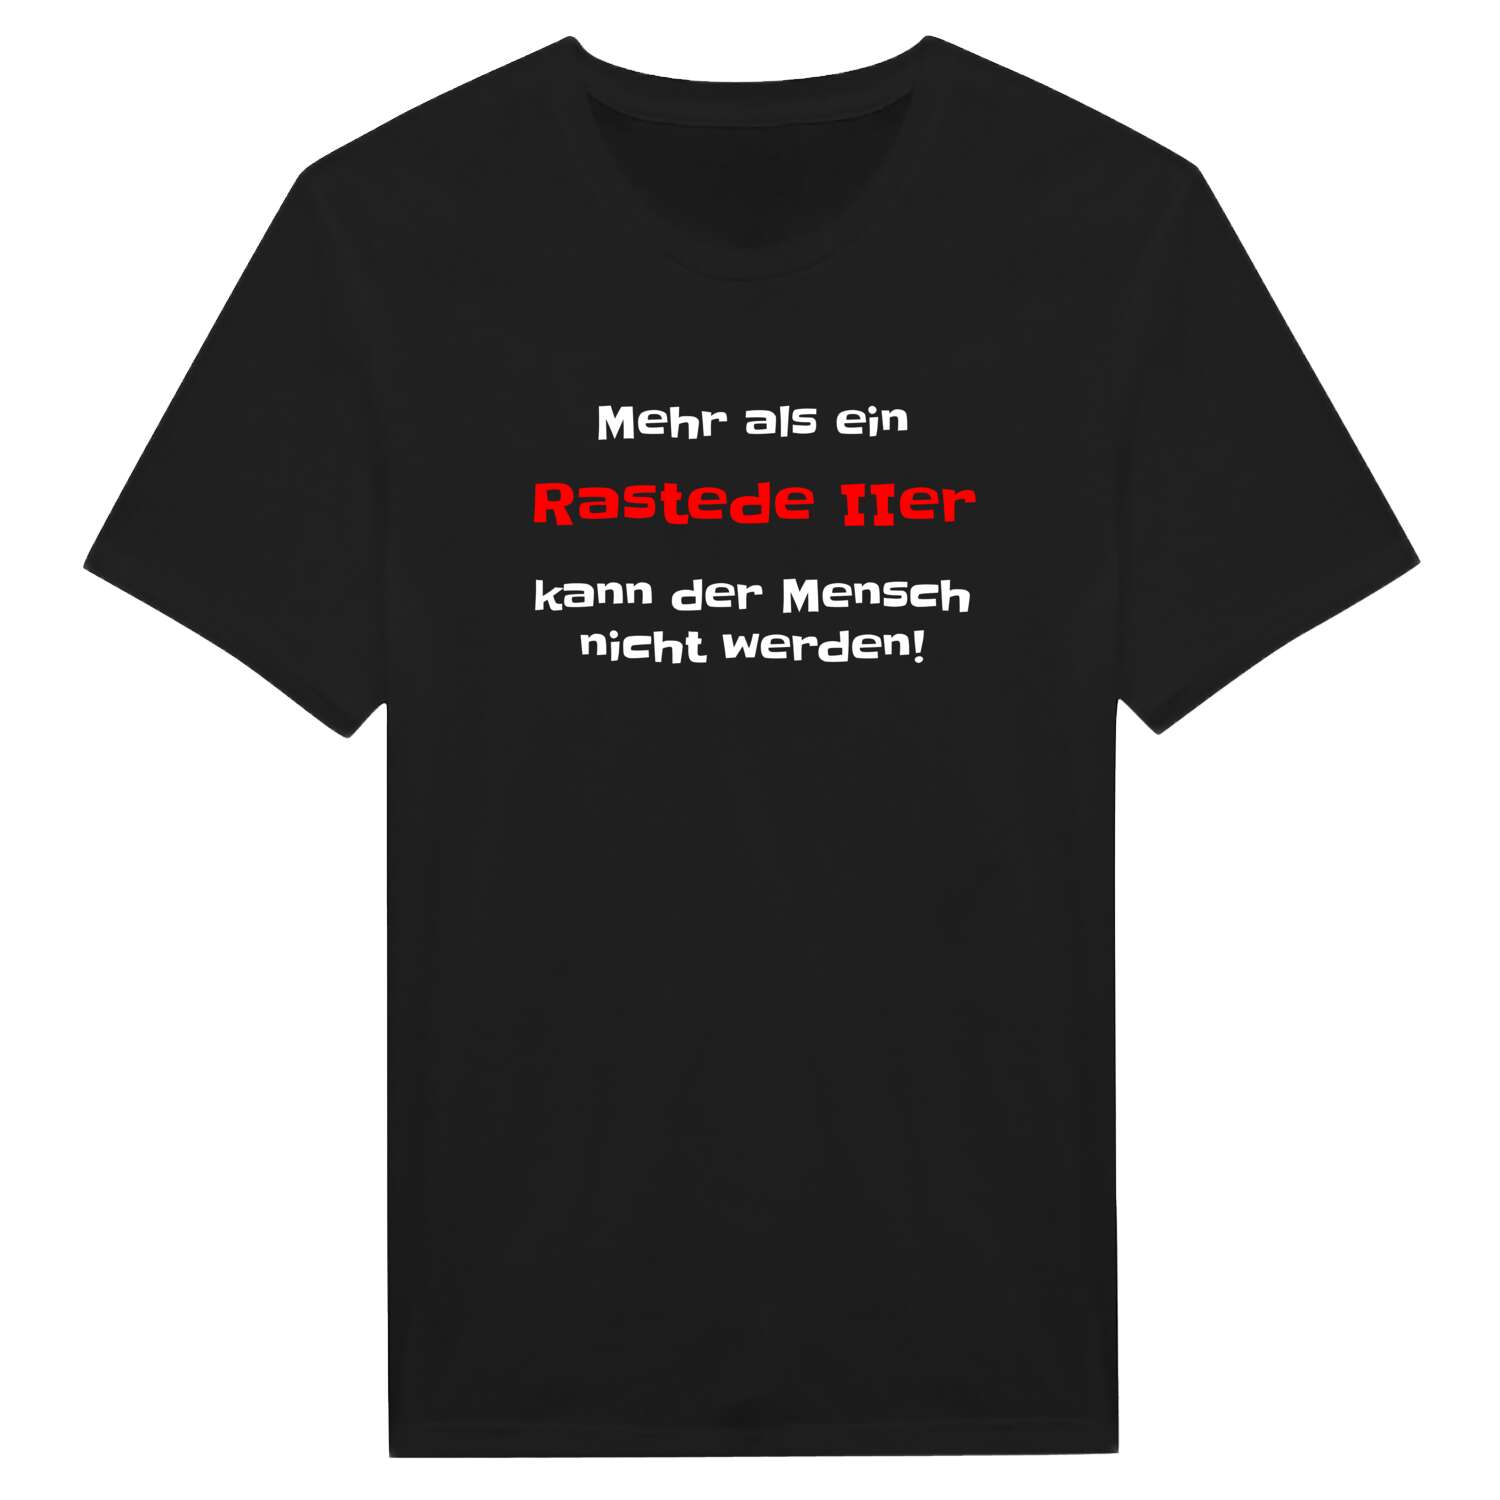 Rastede II T-Shirt »Mehr als ein«